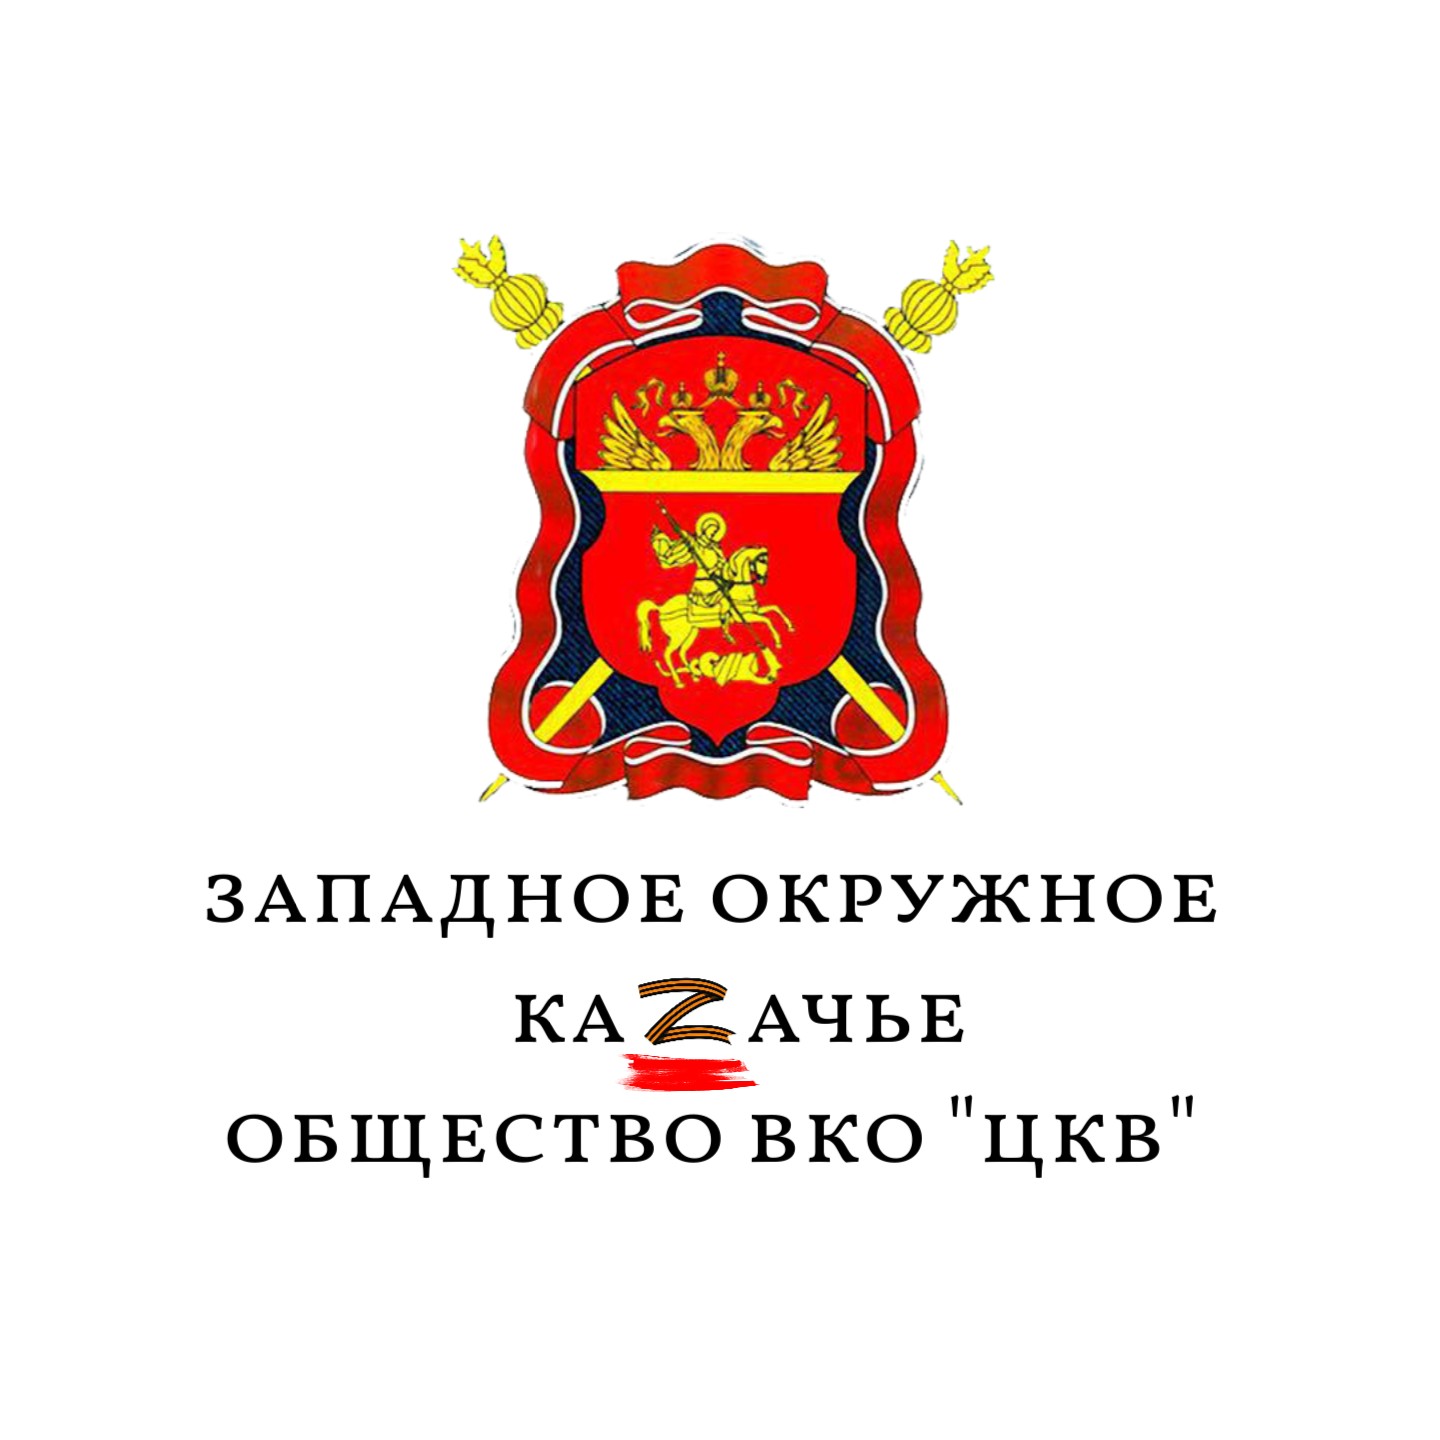 Казаки Западного окружного казачьего общества ВКО ЦКВ объявили сбор гуманитарной помощи жителям и добровольцам ДНР и ЛНР.